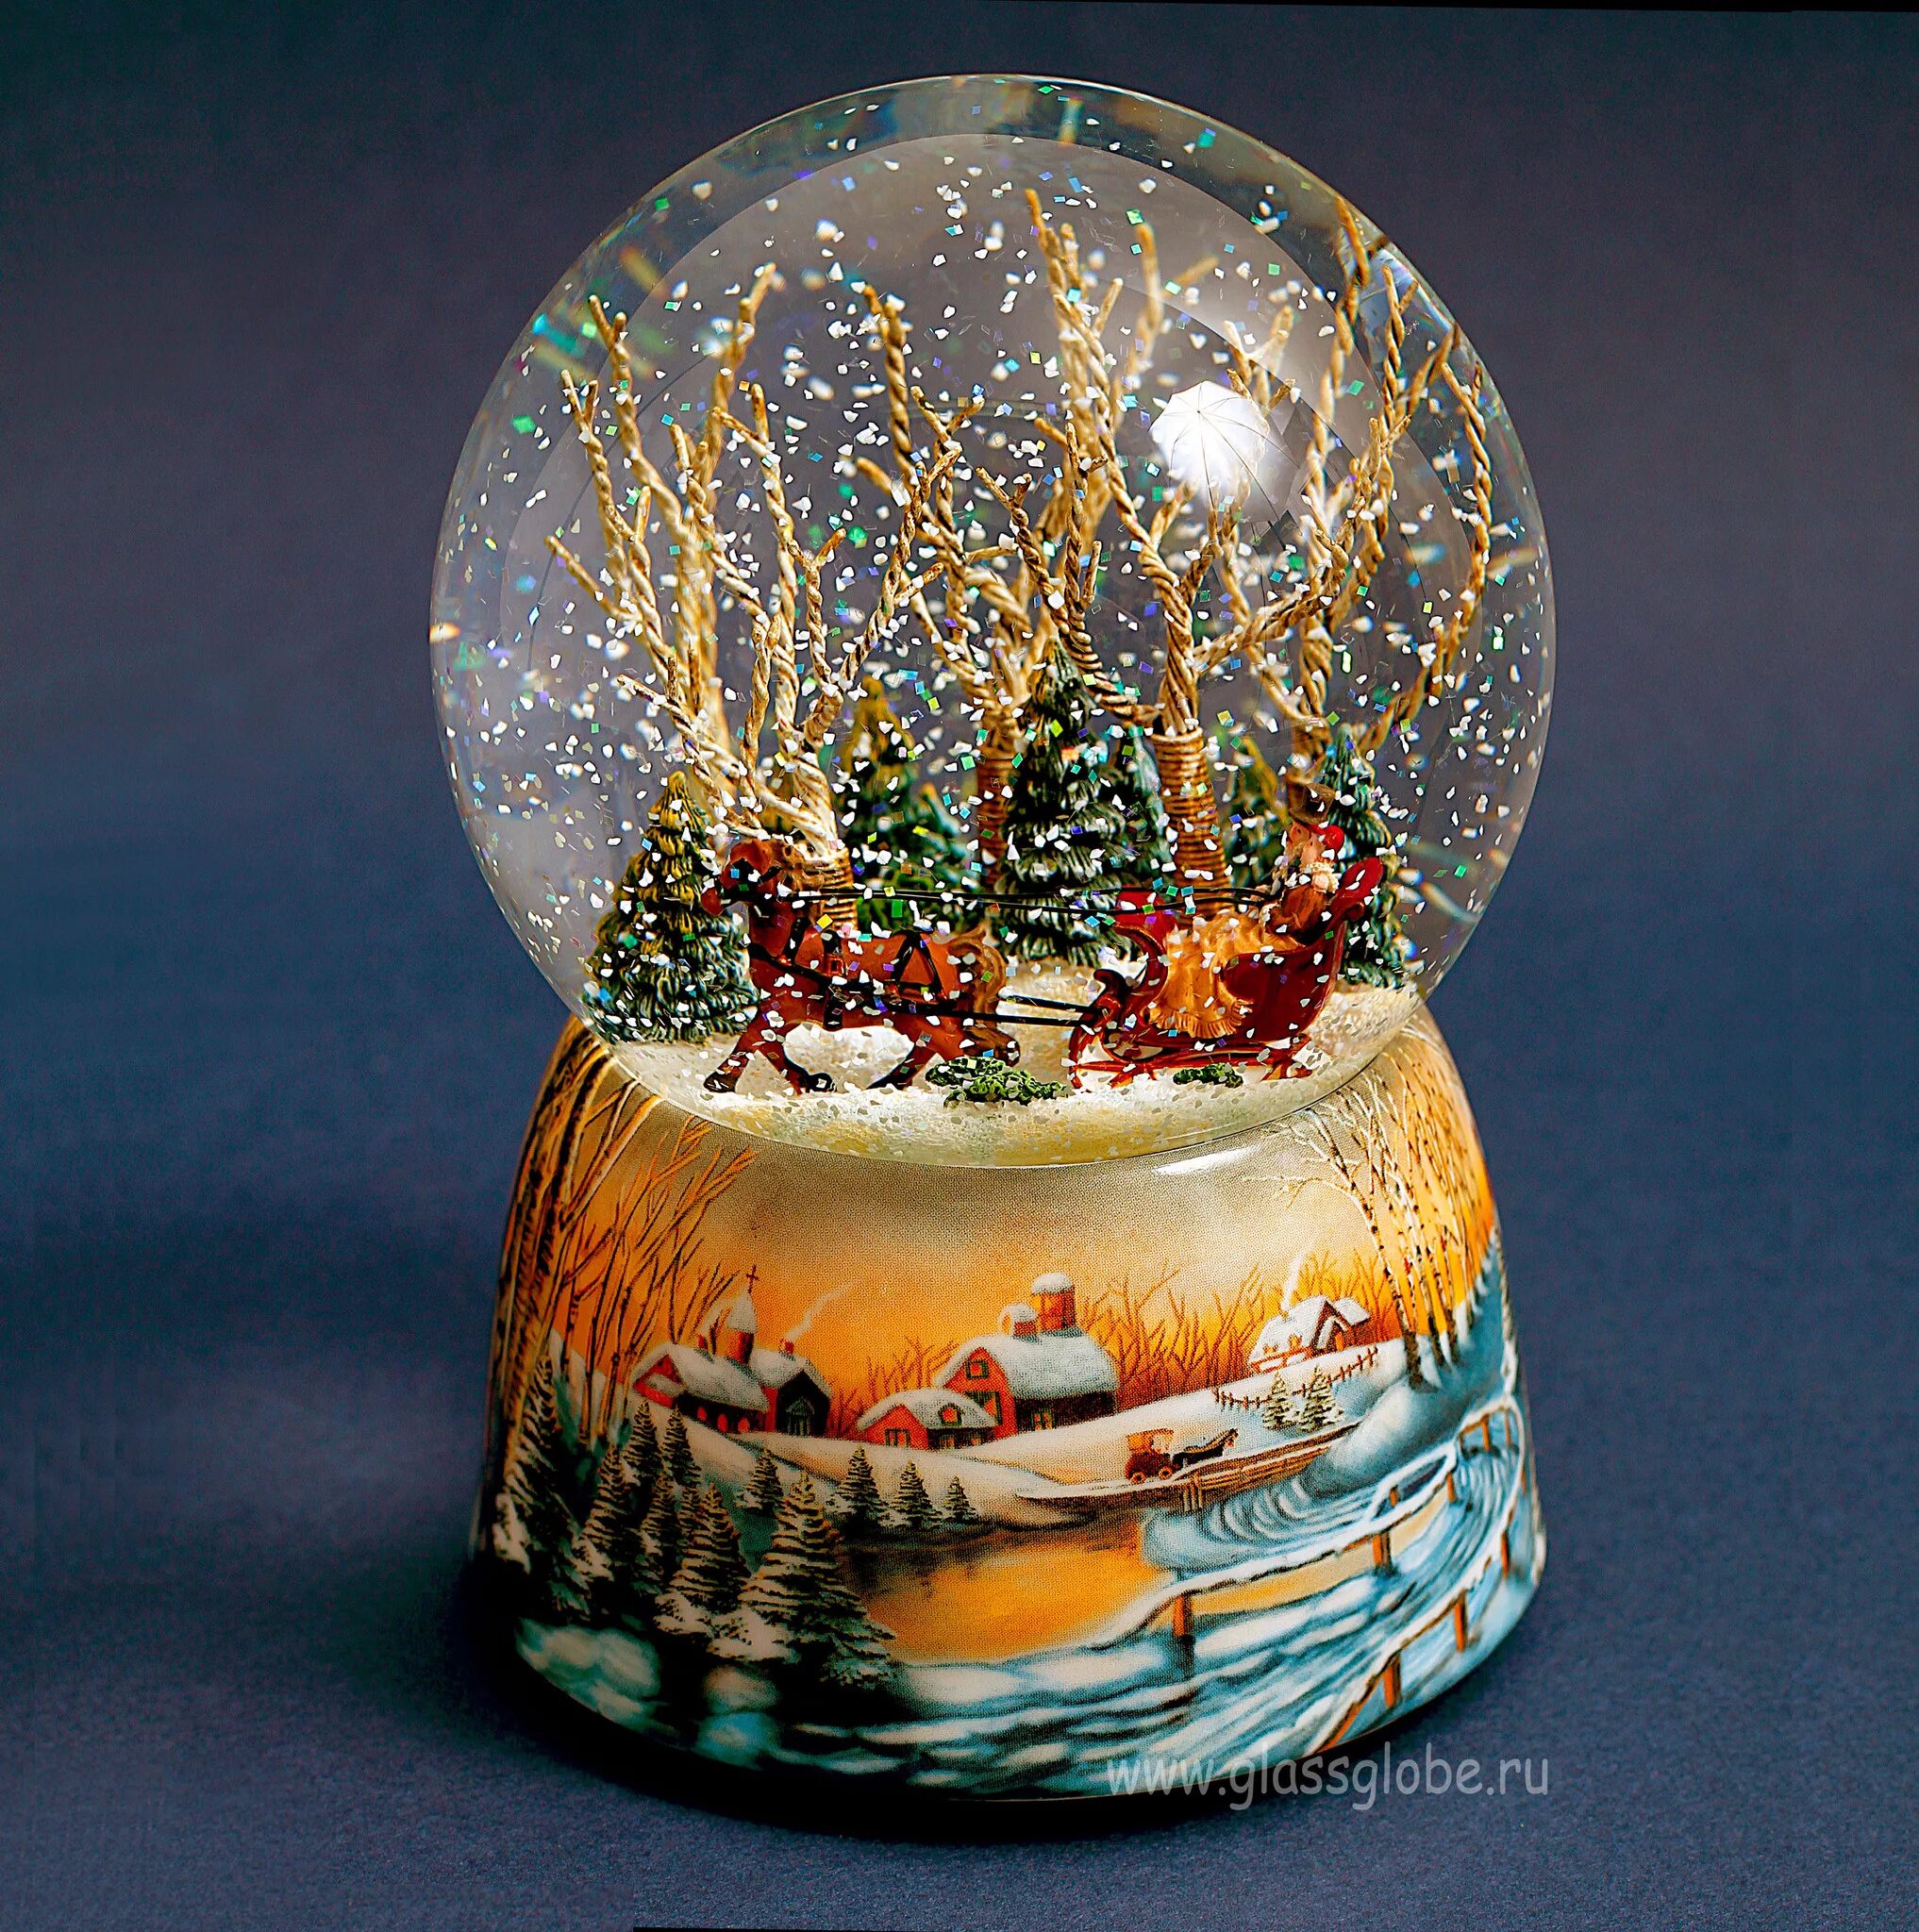 Шары внутри снег. Снежный шар. Стеклянный шар со снегом. Новогодний стеклянный шар со снегом. Новогодний стеклянный шар.